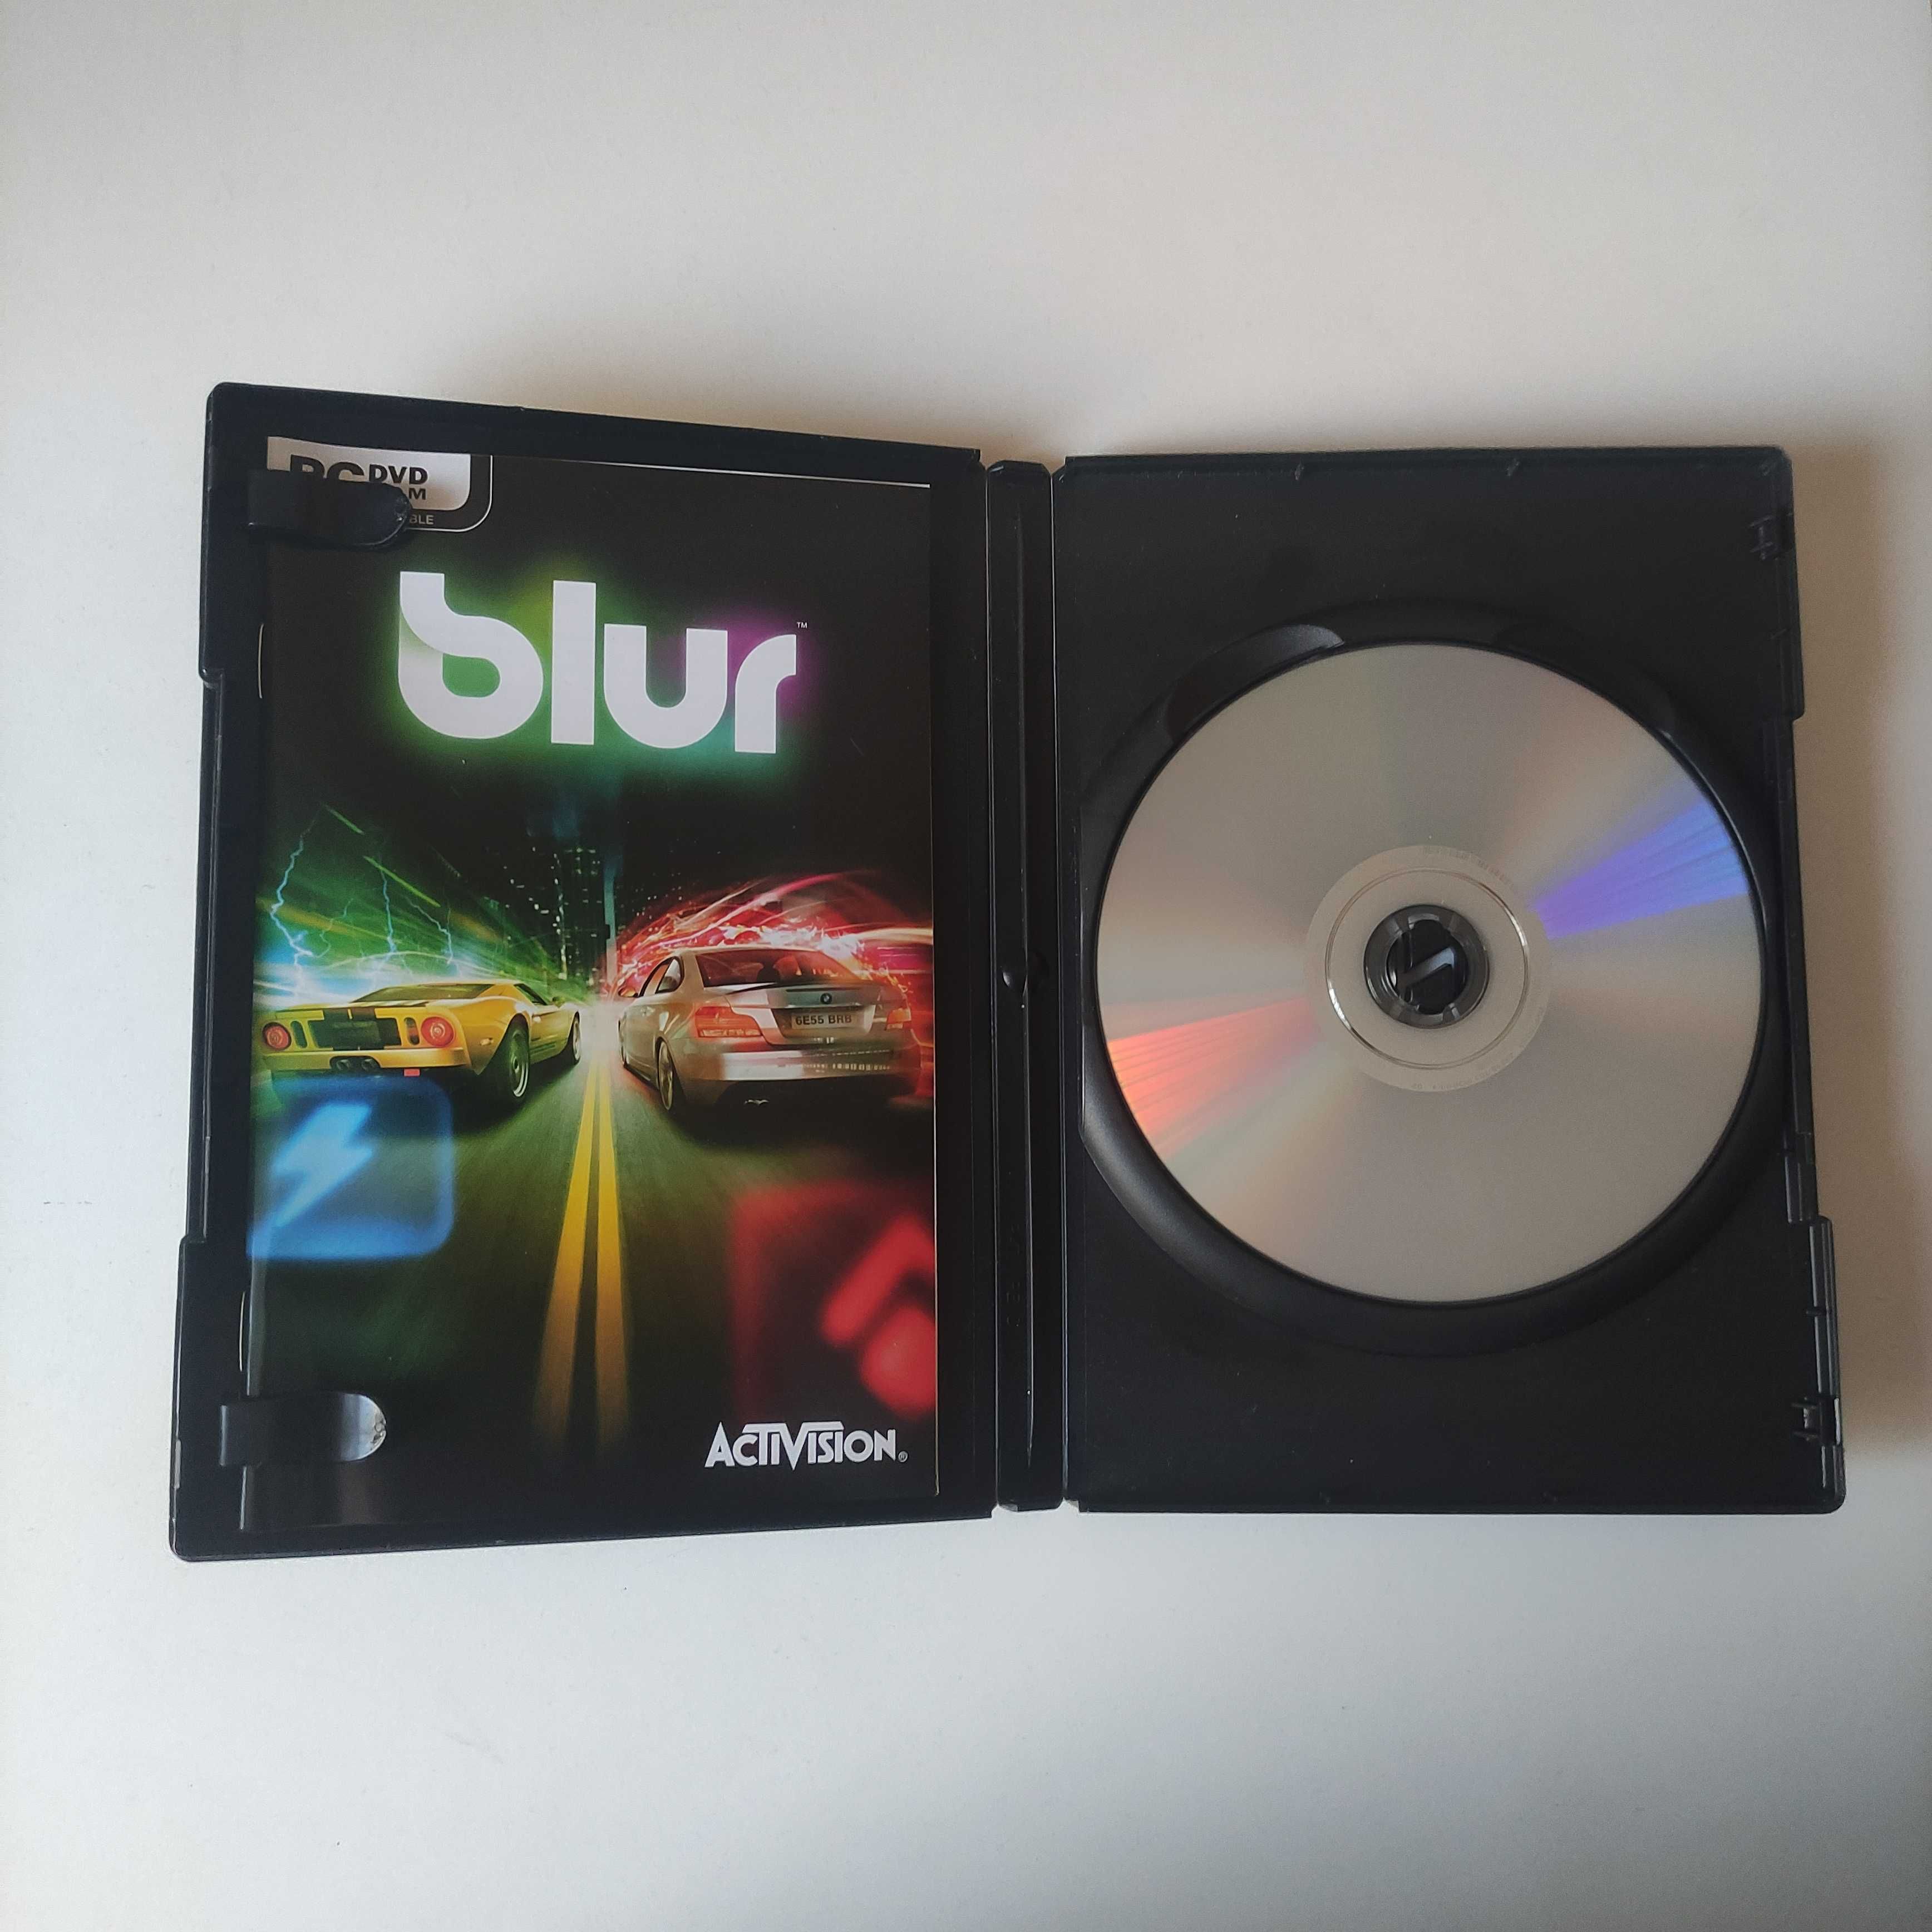 Blur - Gra PC od Activision - prawie jak nowa